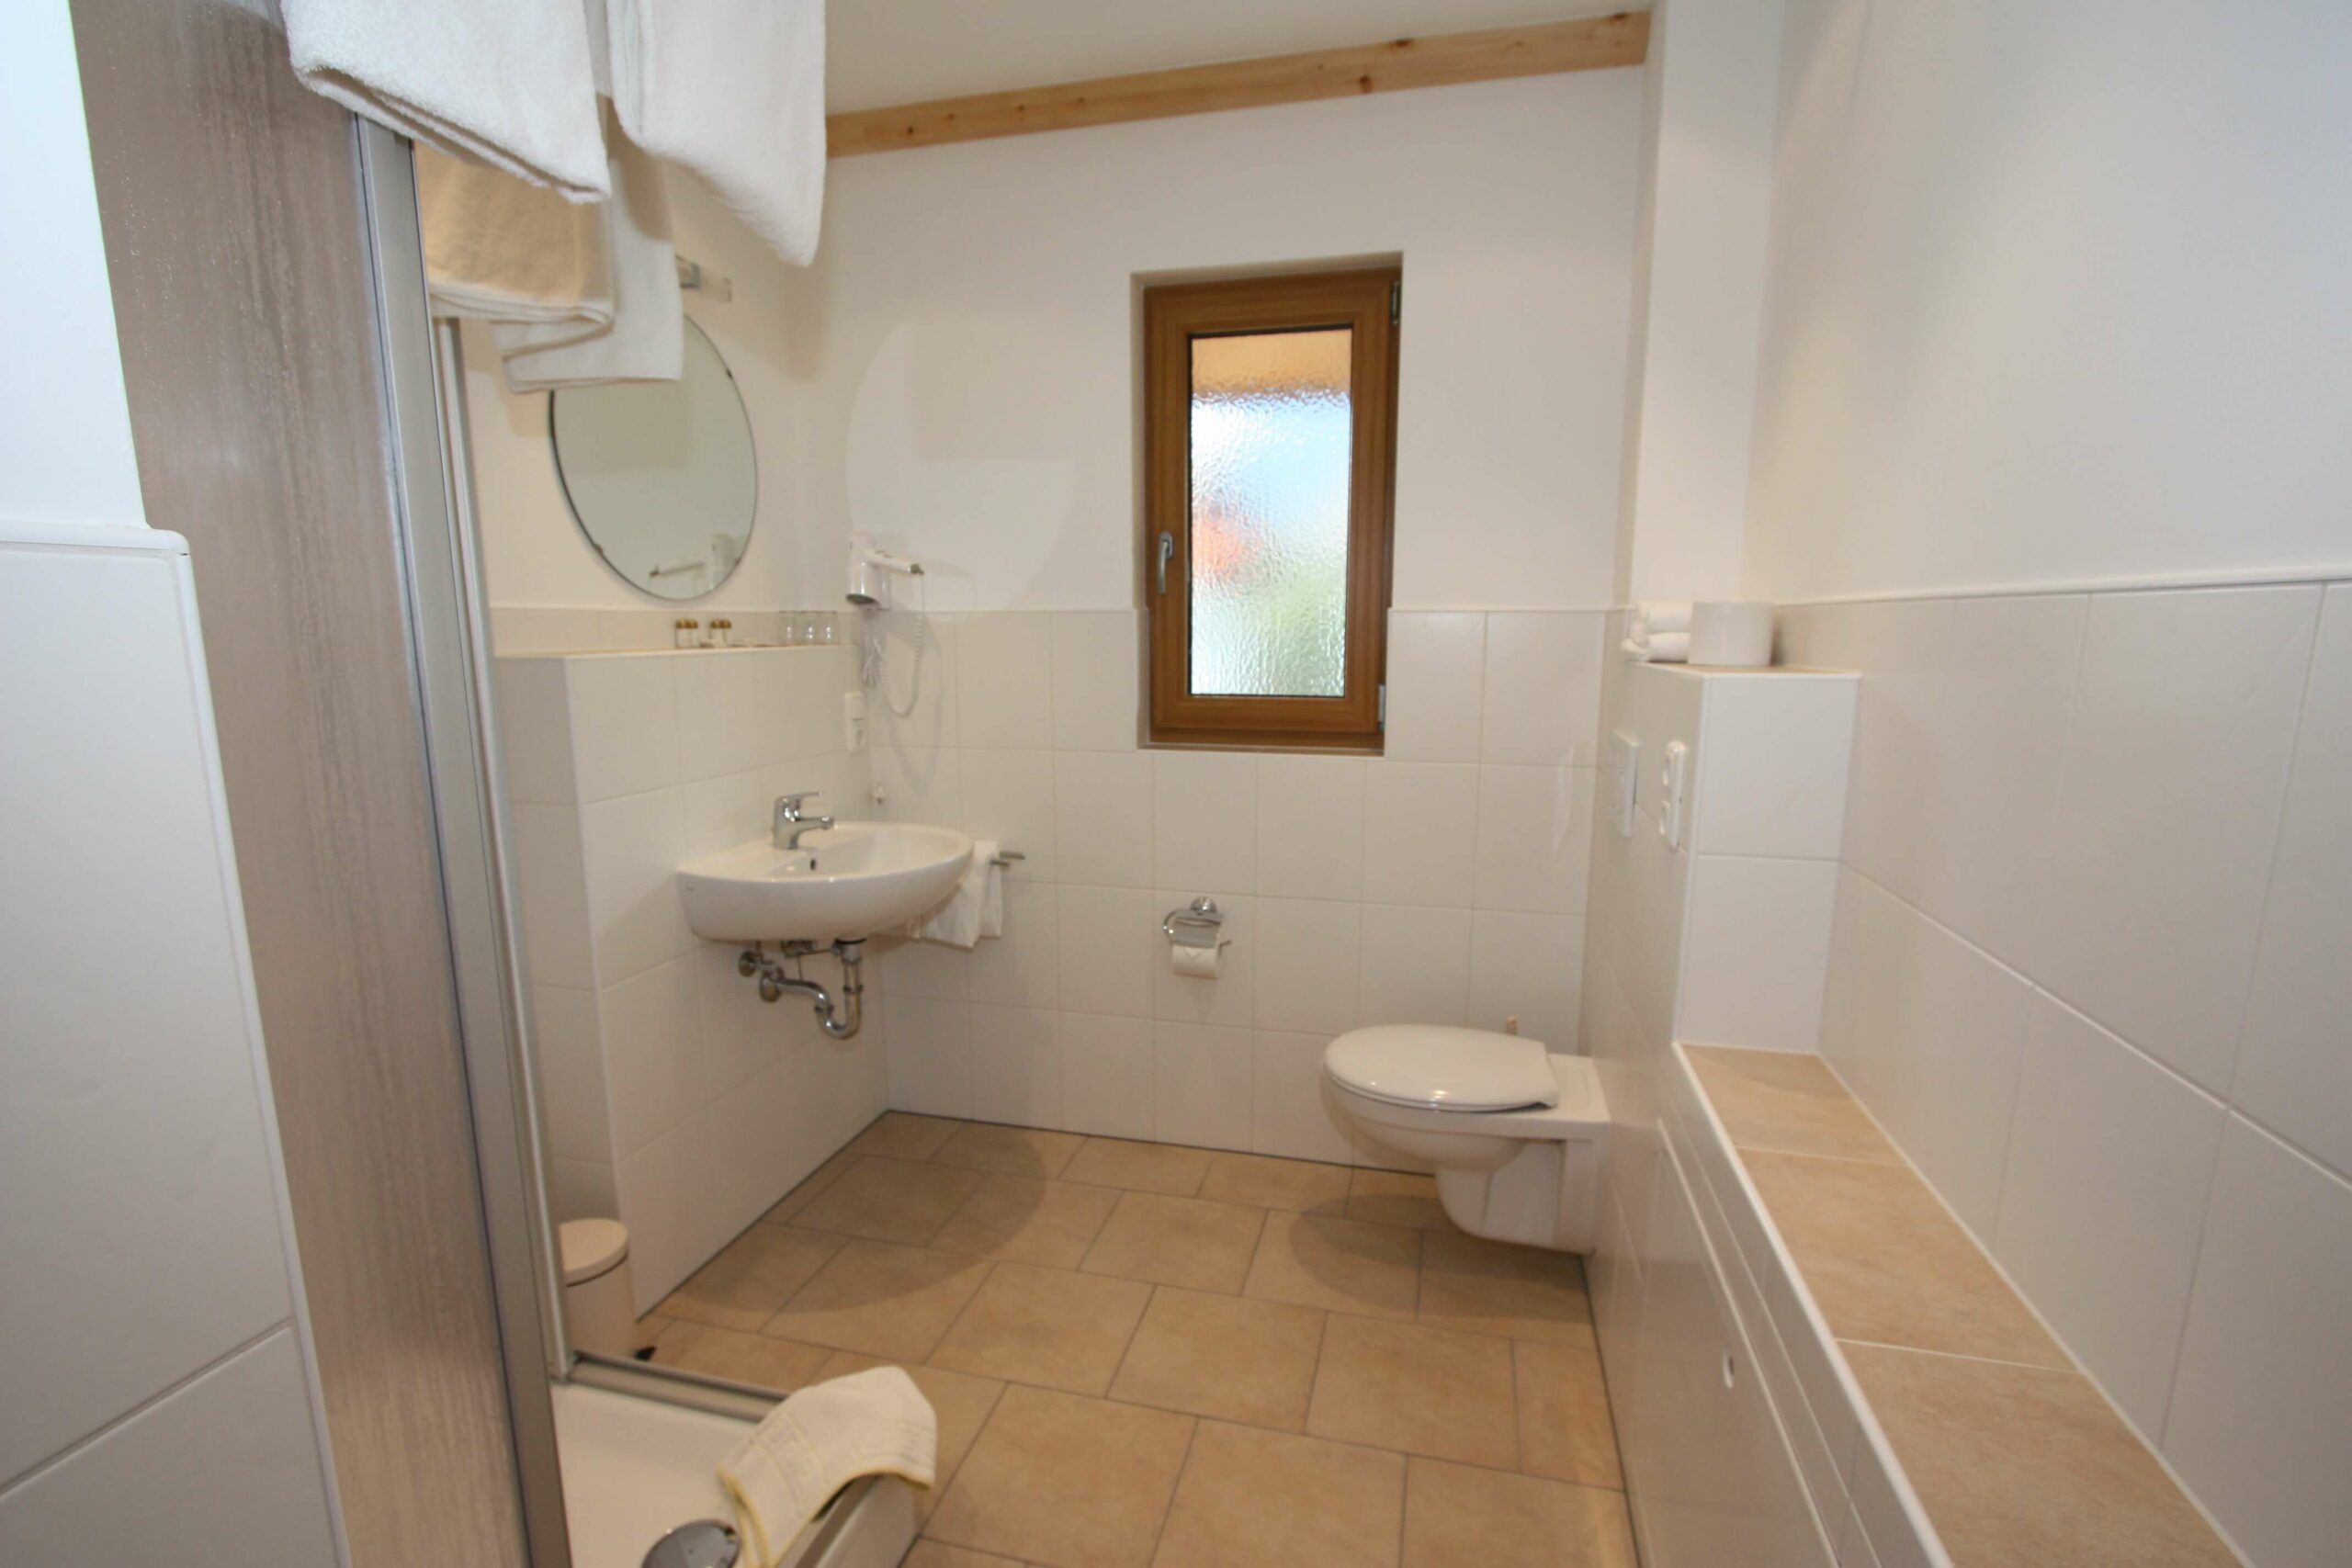 Badezimmer in der Ferienwohnung des Hotel Garni Almenrausch und Edelweiß in Garmisch-Patenkirchen